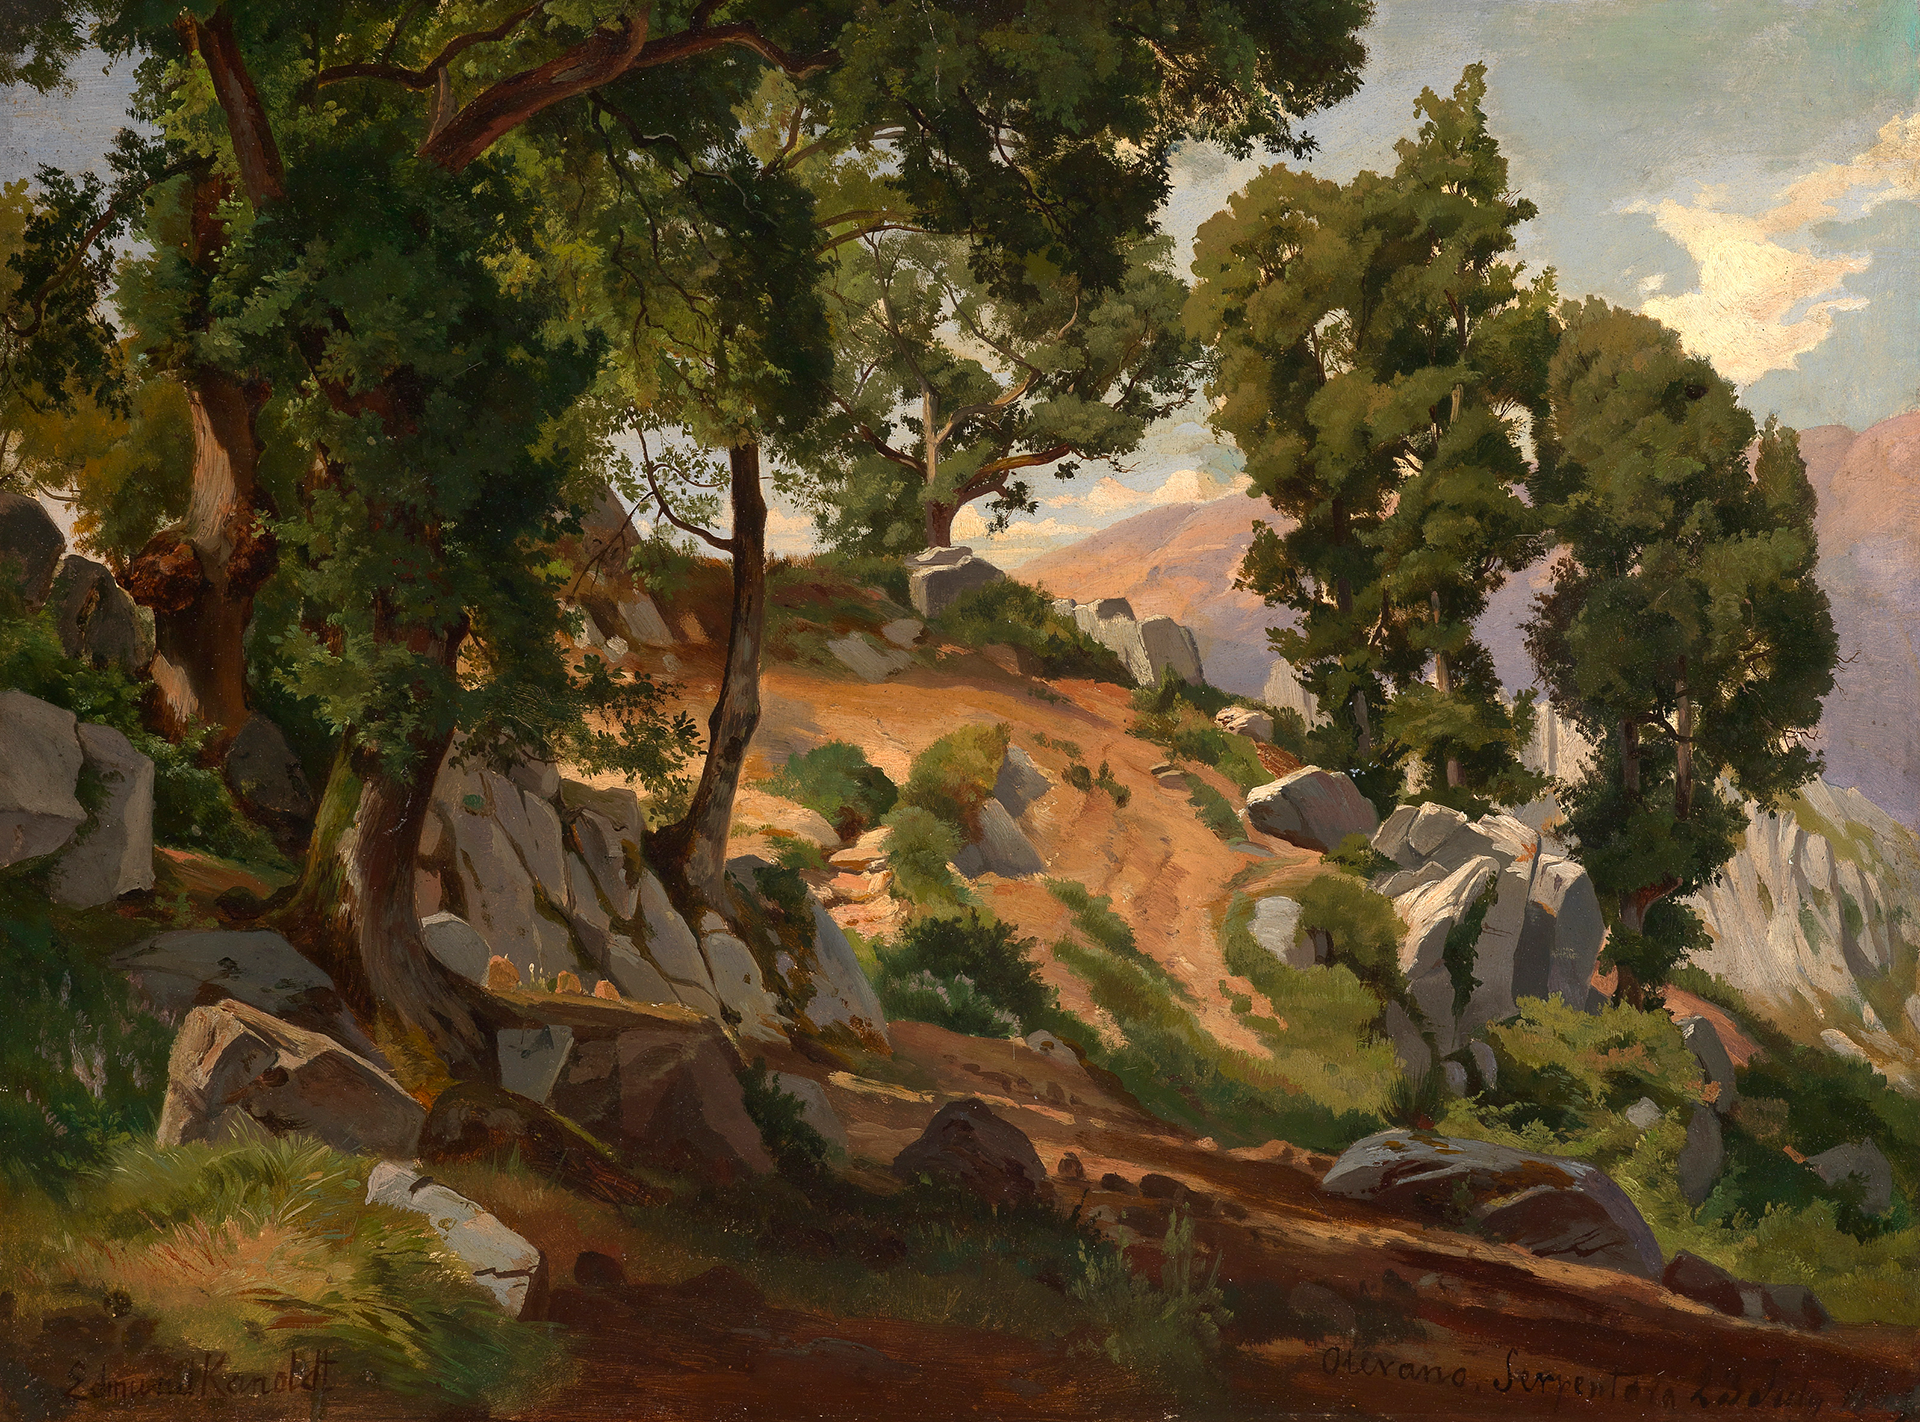 Gemälde des Malers Edmund Friedrich Kanoldt, das das italienische Steineichenwäldchen Serpentara zeigt